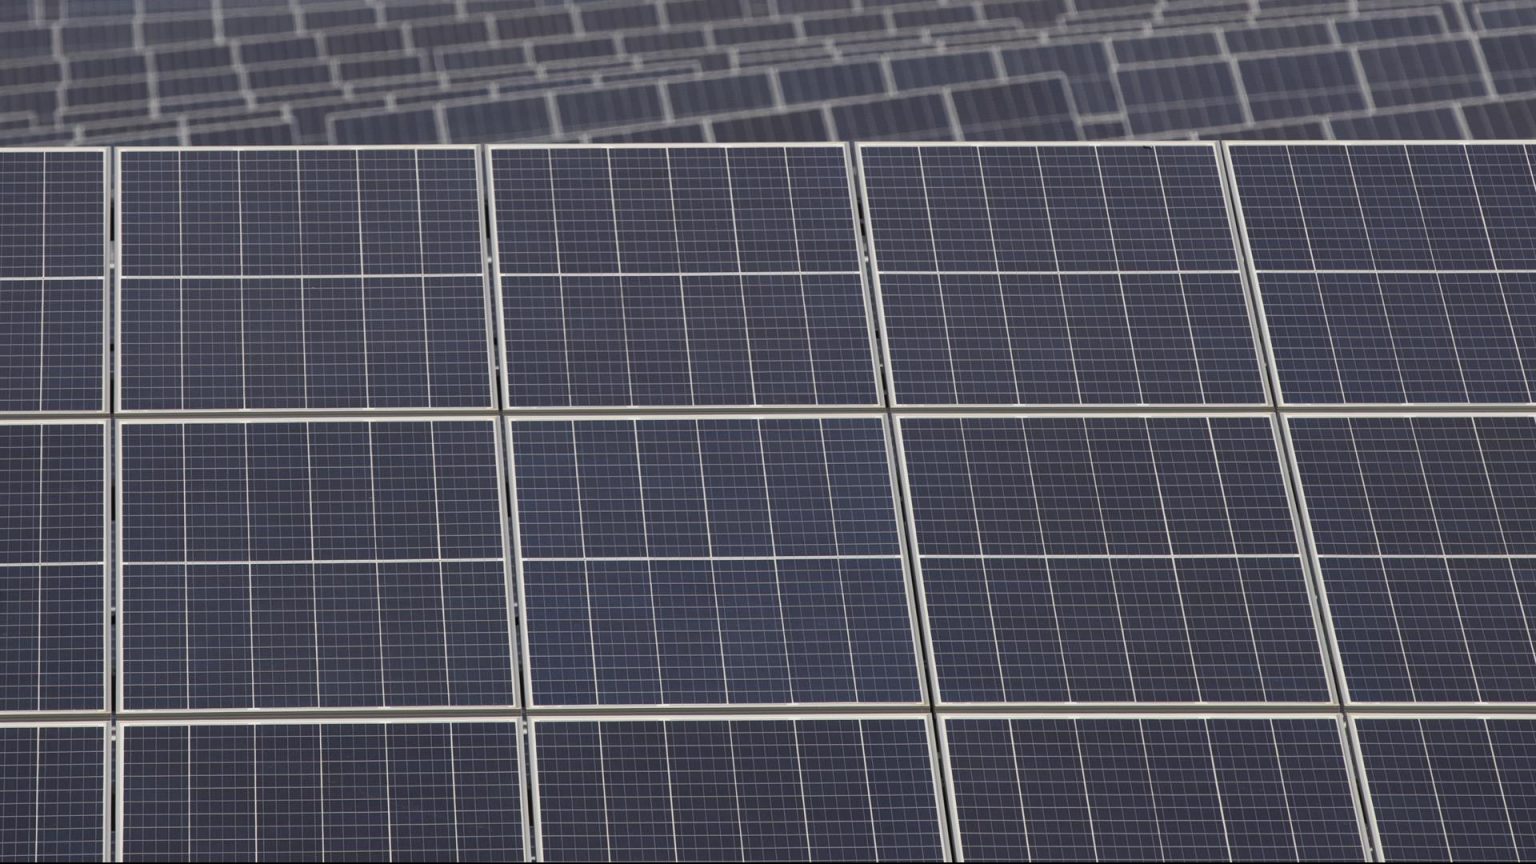 La UE permitirá crear huertos solares de hasta 750 placas sin informes ambientales rigurosos